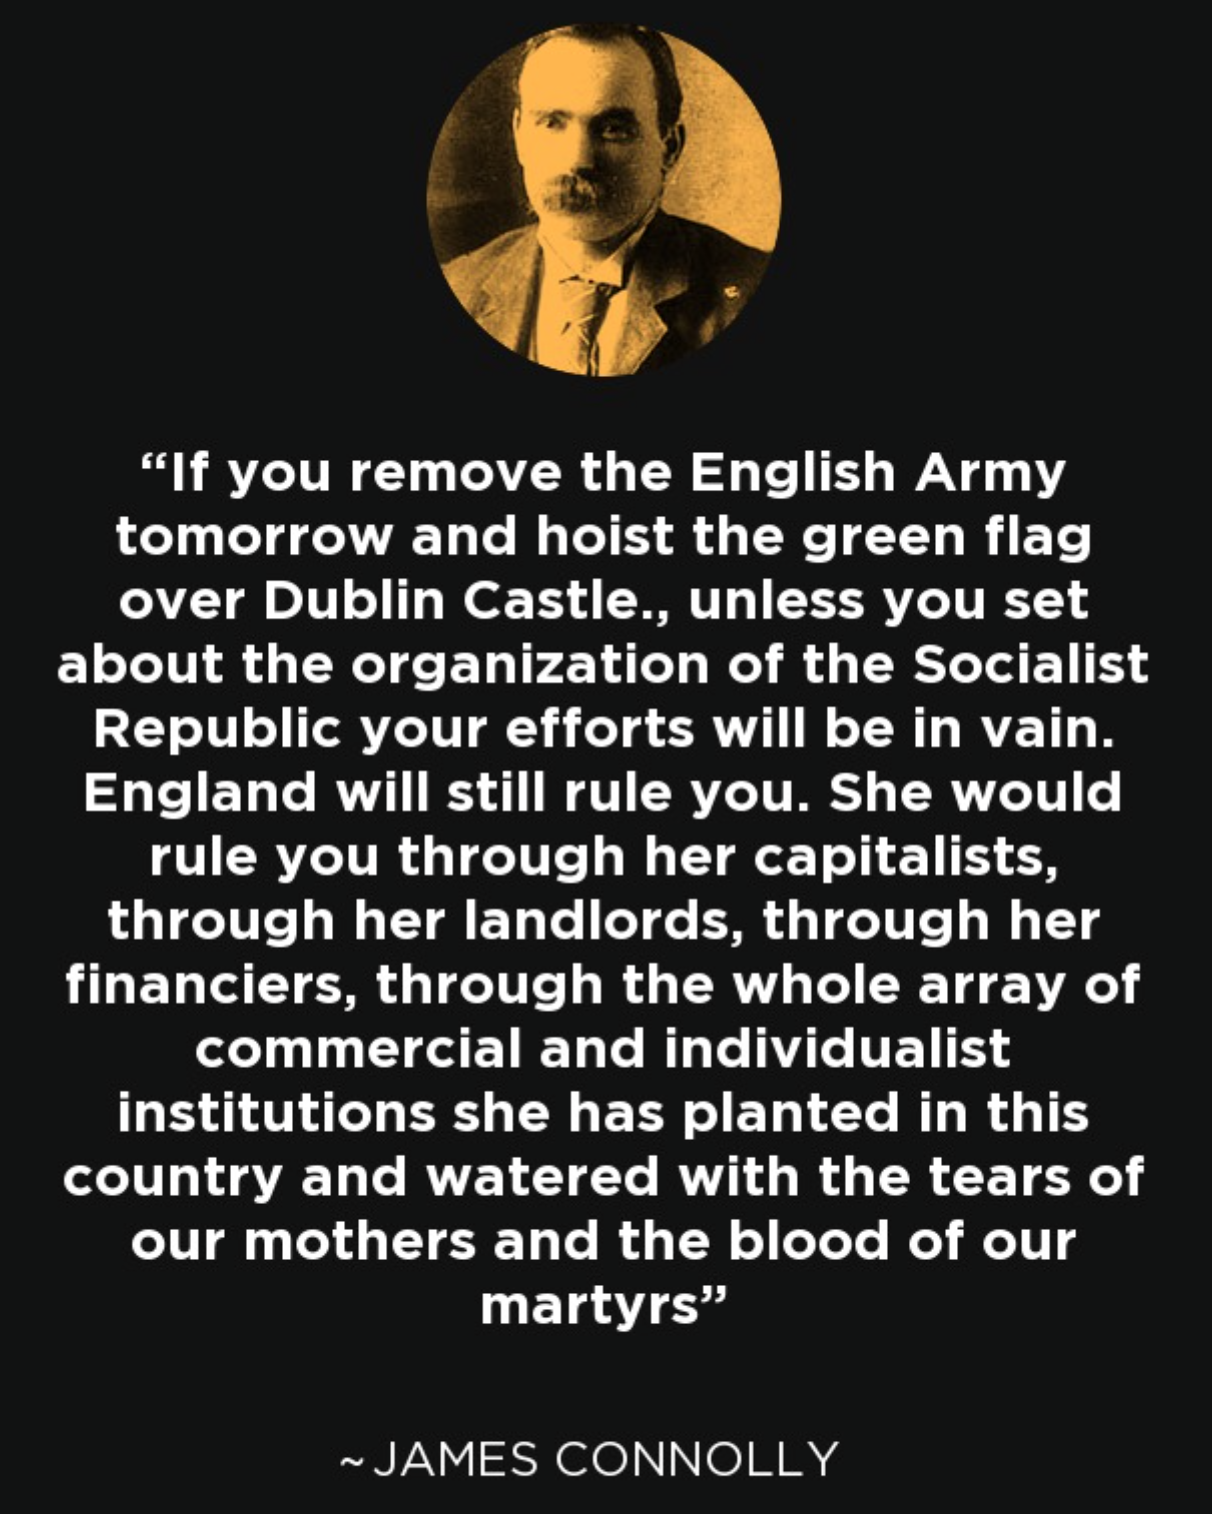 愛爾蘭革命馬克思主義者詹姆斯·康諾利的一則明言